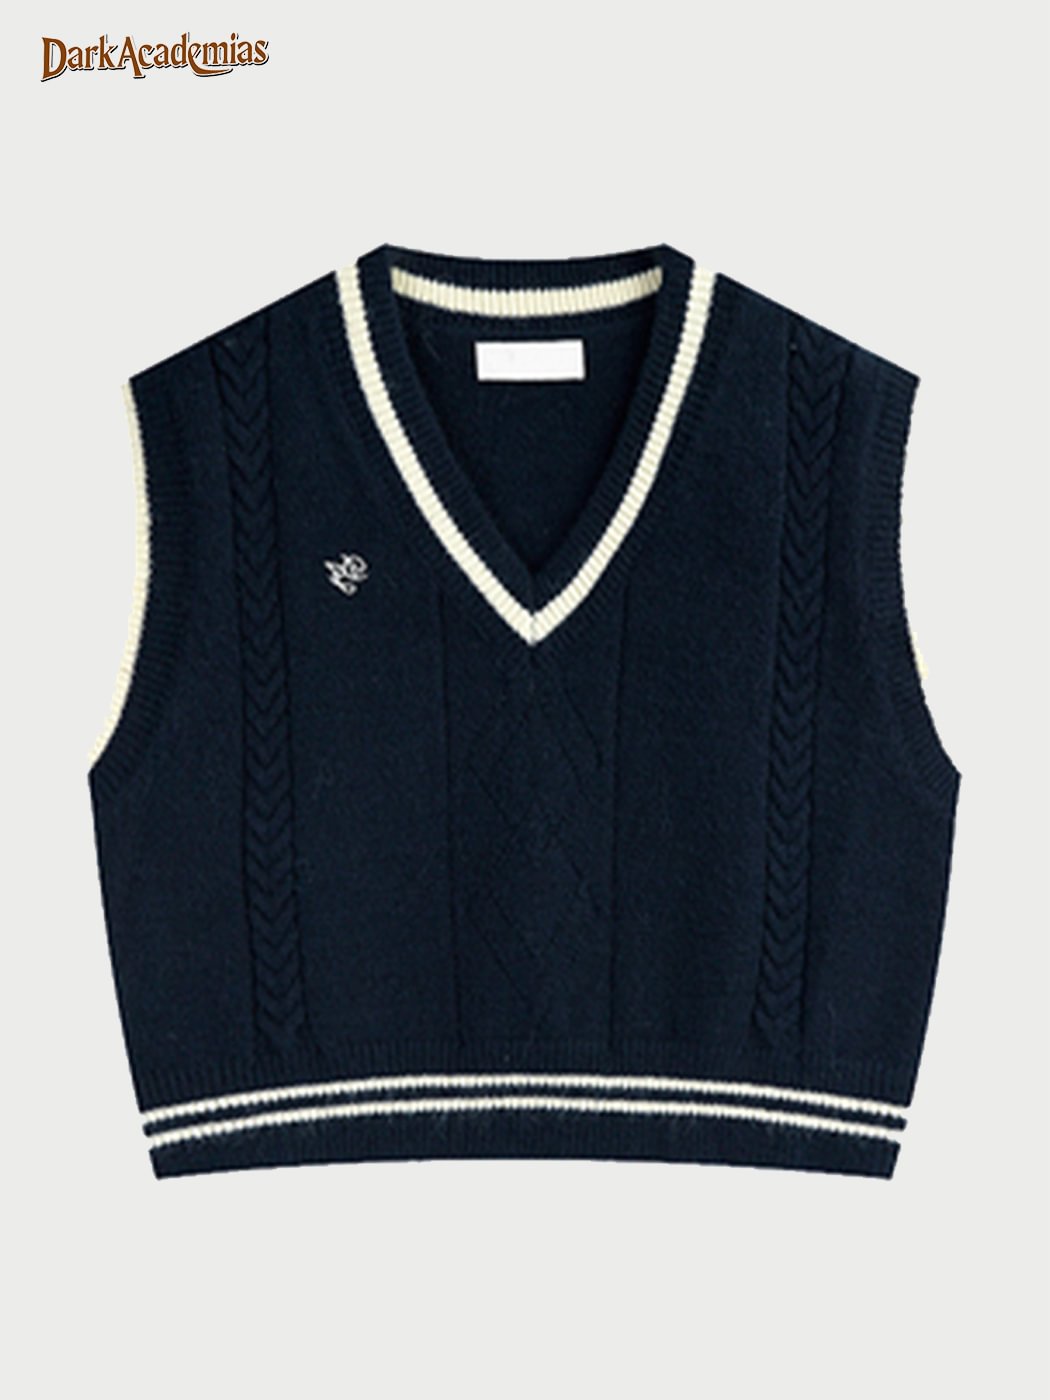 Vintage College Knitted Vest